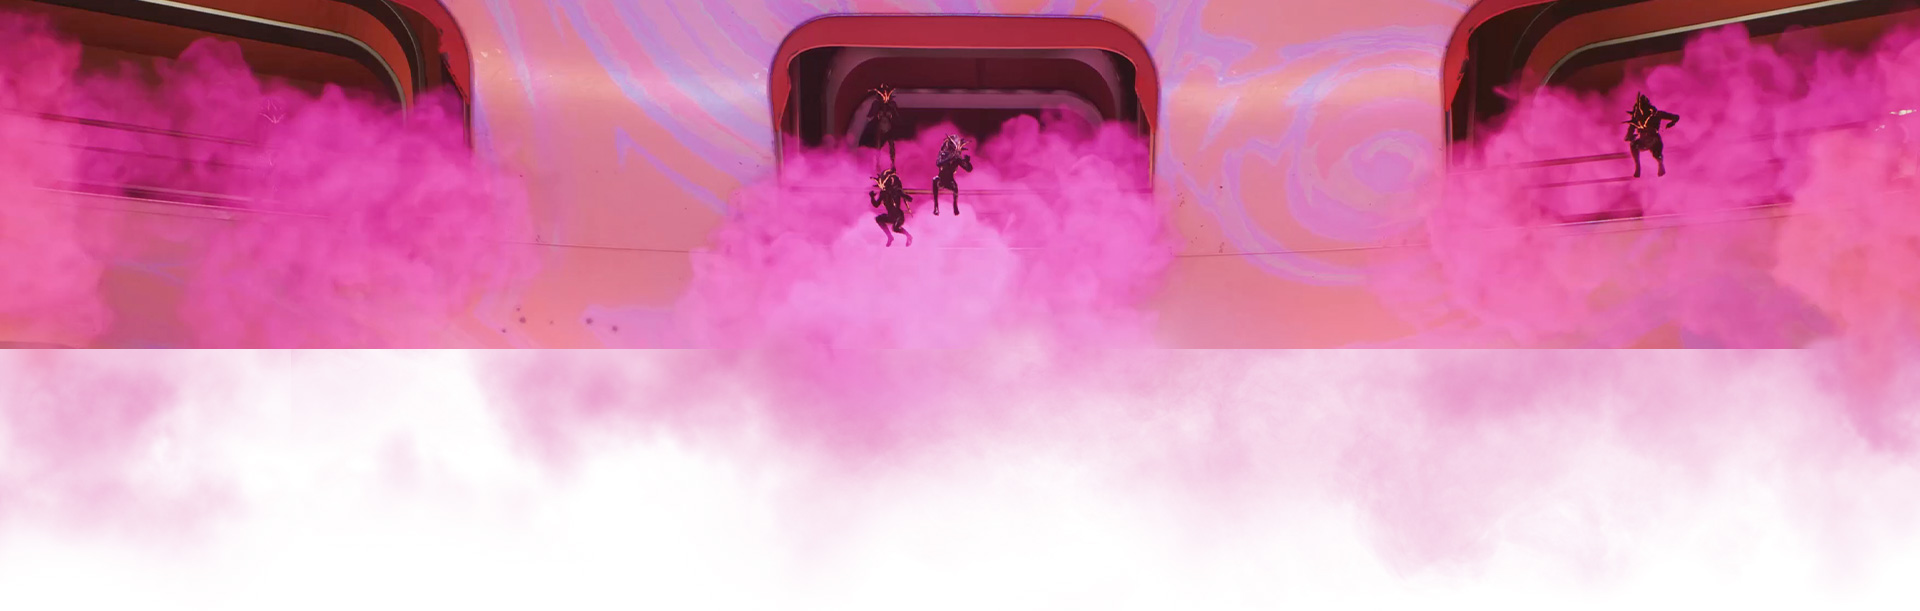 Uma tripulação salta de uma nave cercada por um fumo cor-de-rosa.